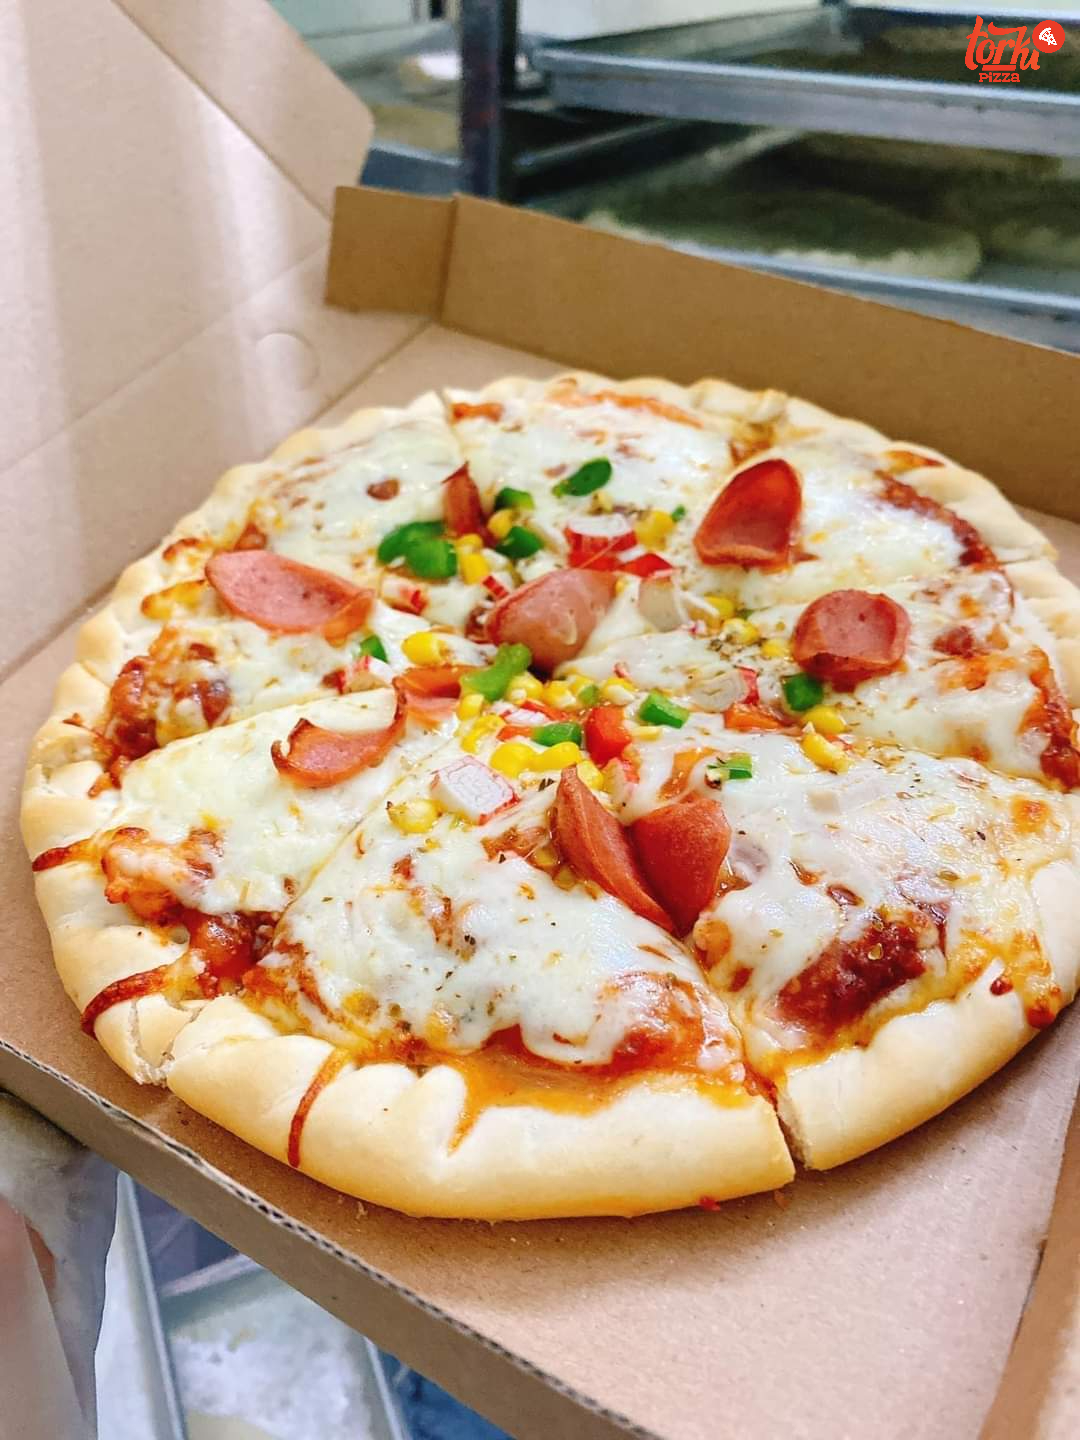 Trang trí bánh Pizza xúc xích sao cho đẹp mắt nhất